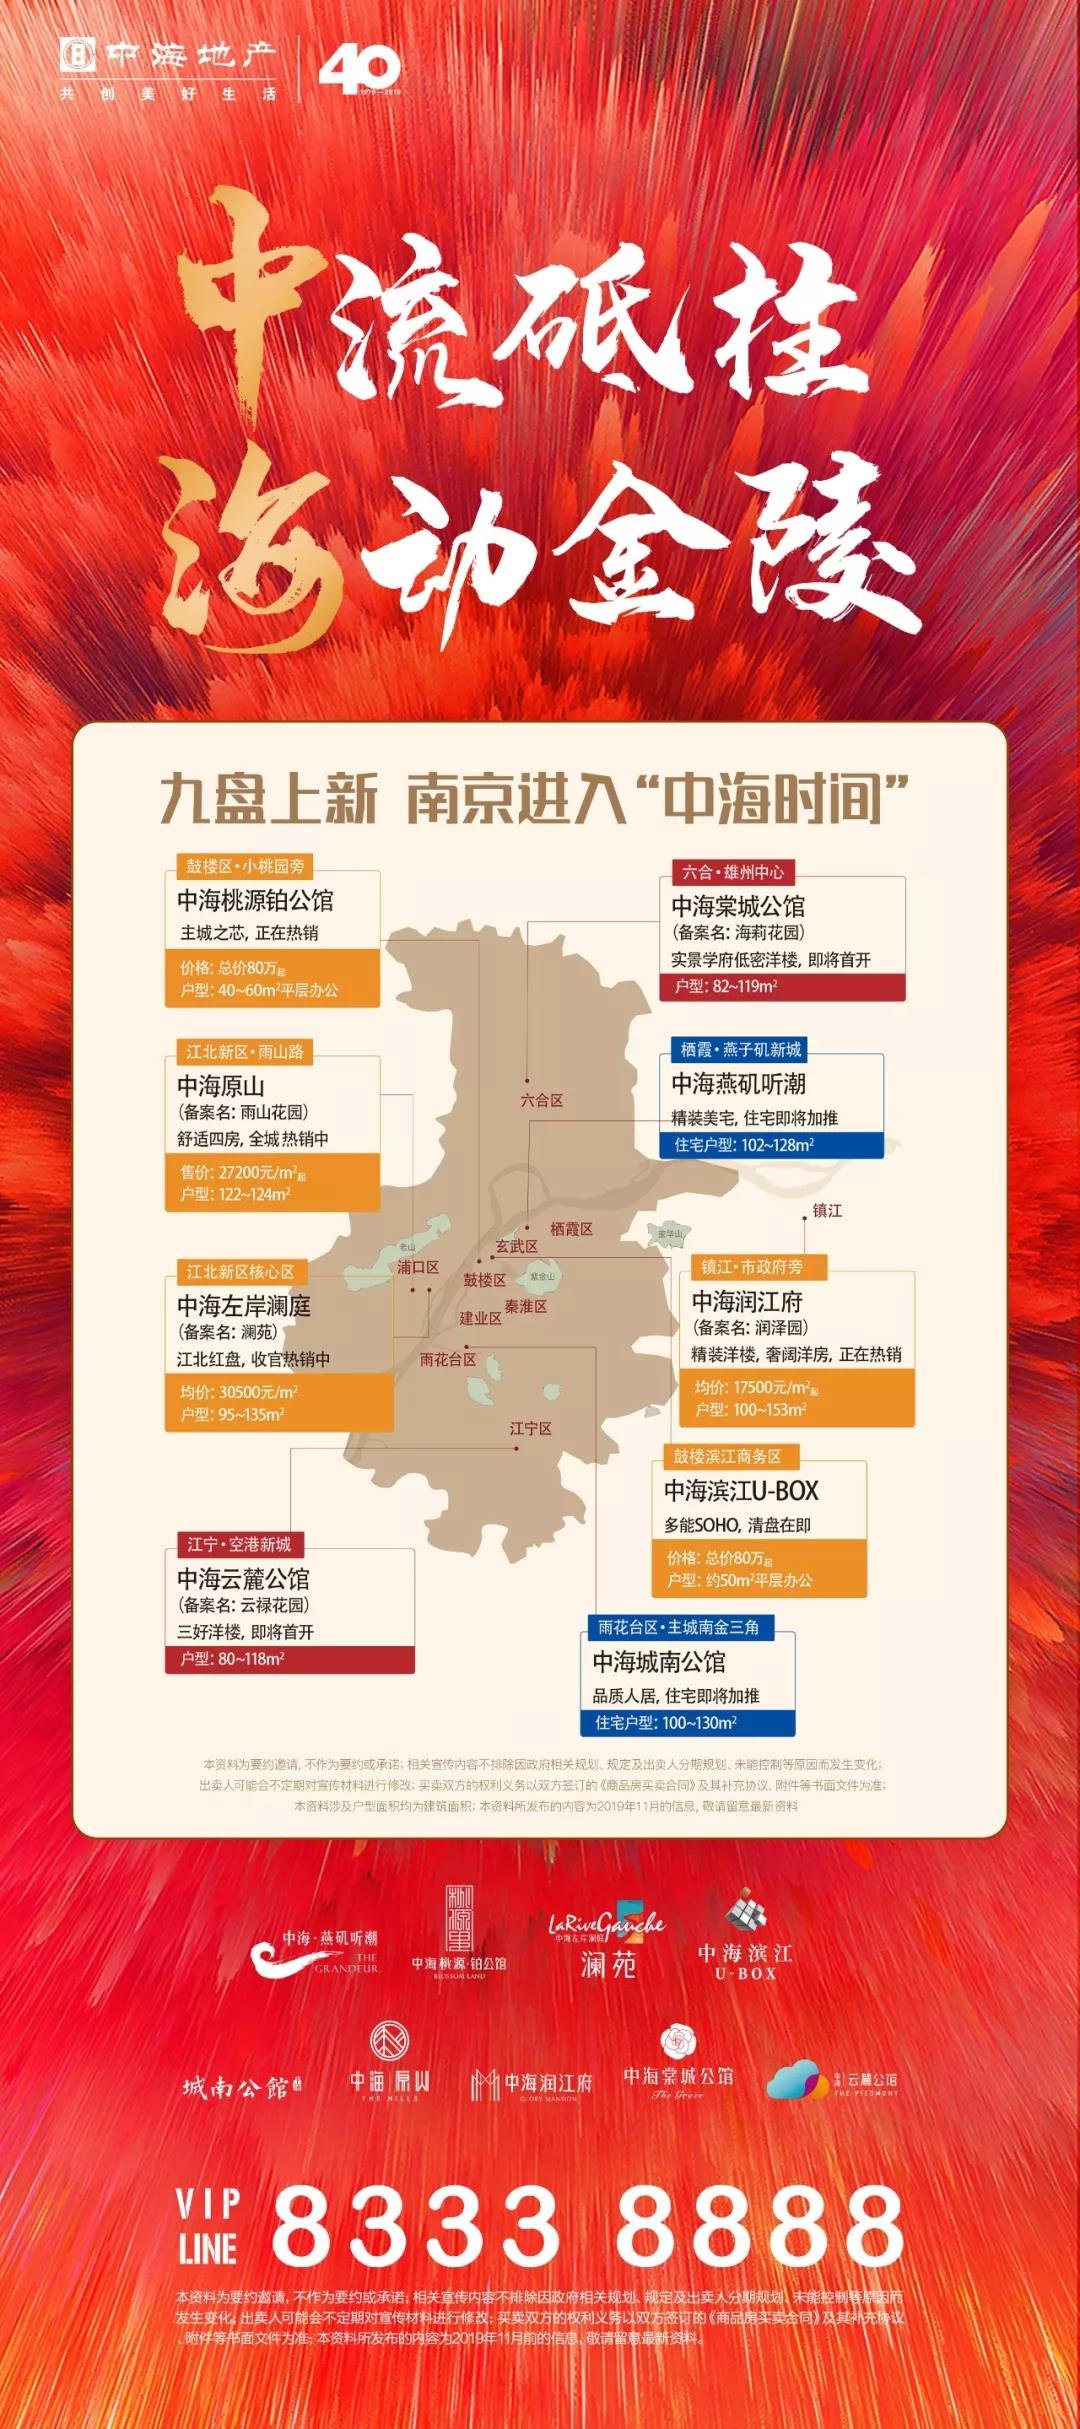 双榜！南京进入“中海时间”，2019全城见证中海高光时刻